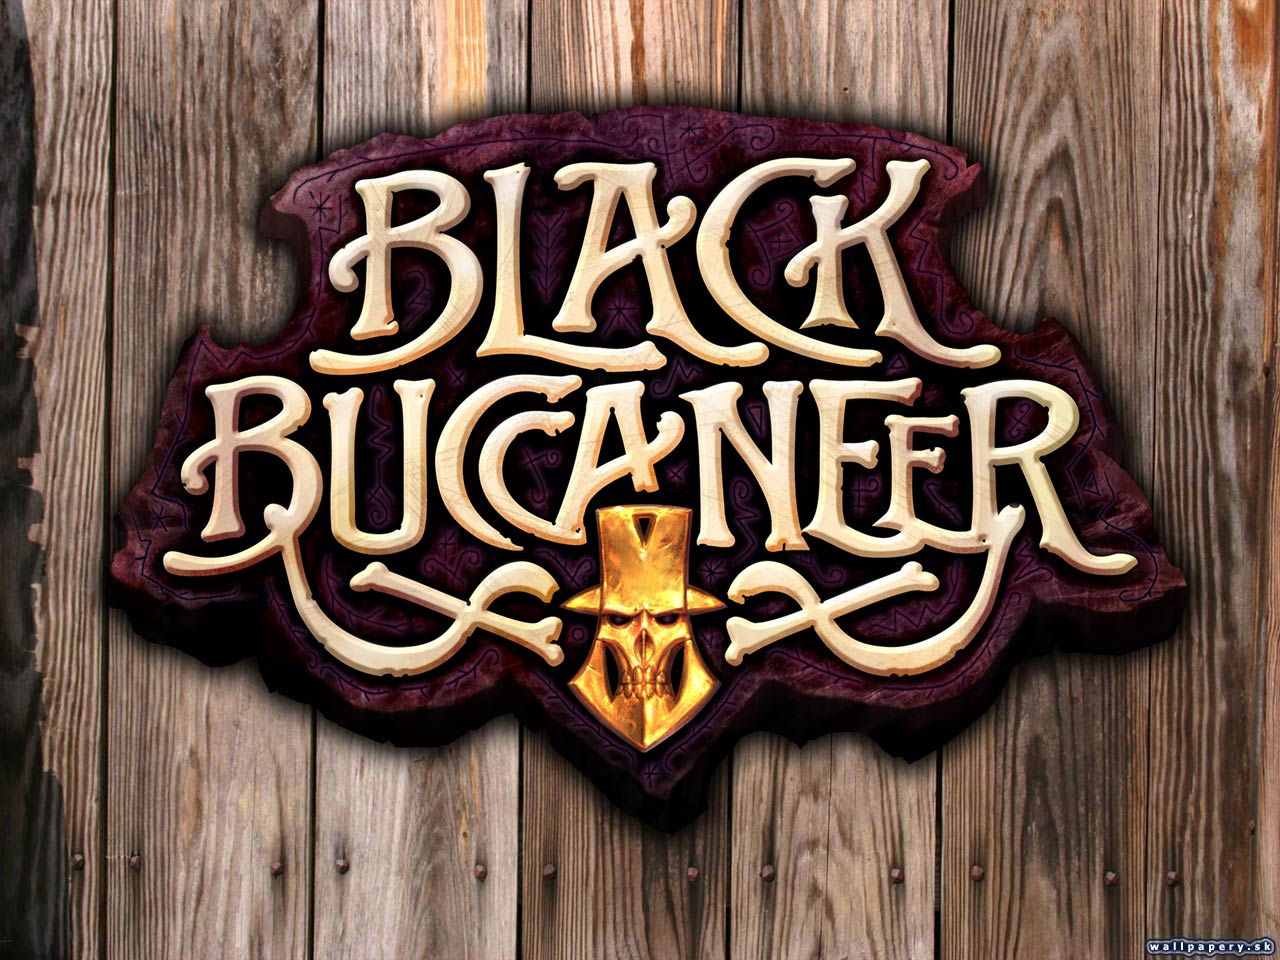 Black Buccaneer - wallpaper 5